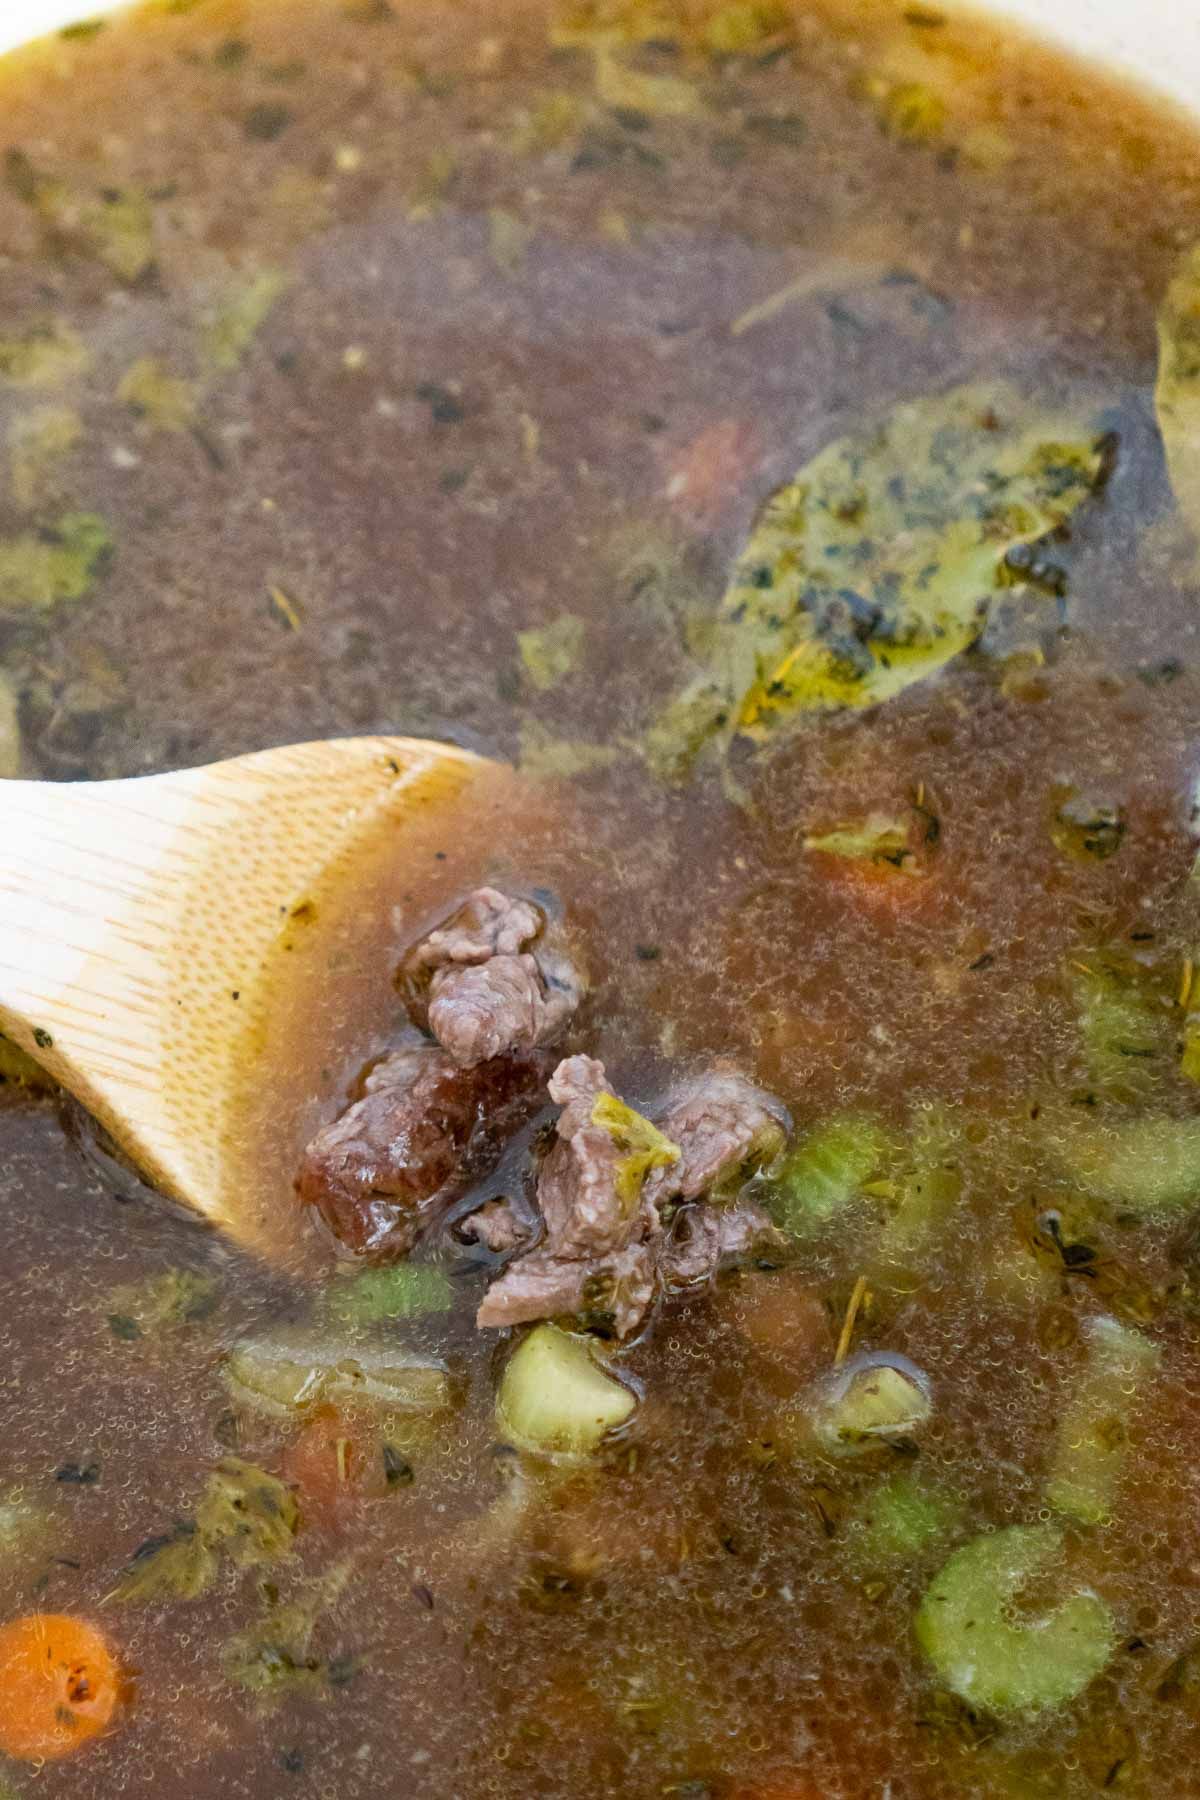 Cuchara de madera revolviendo la carne en una sopa de cebada y carne